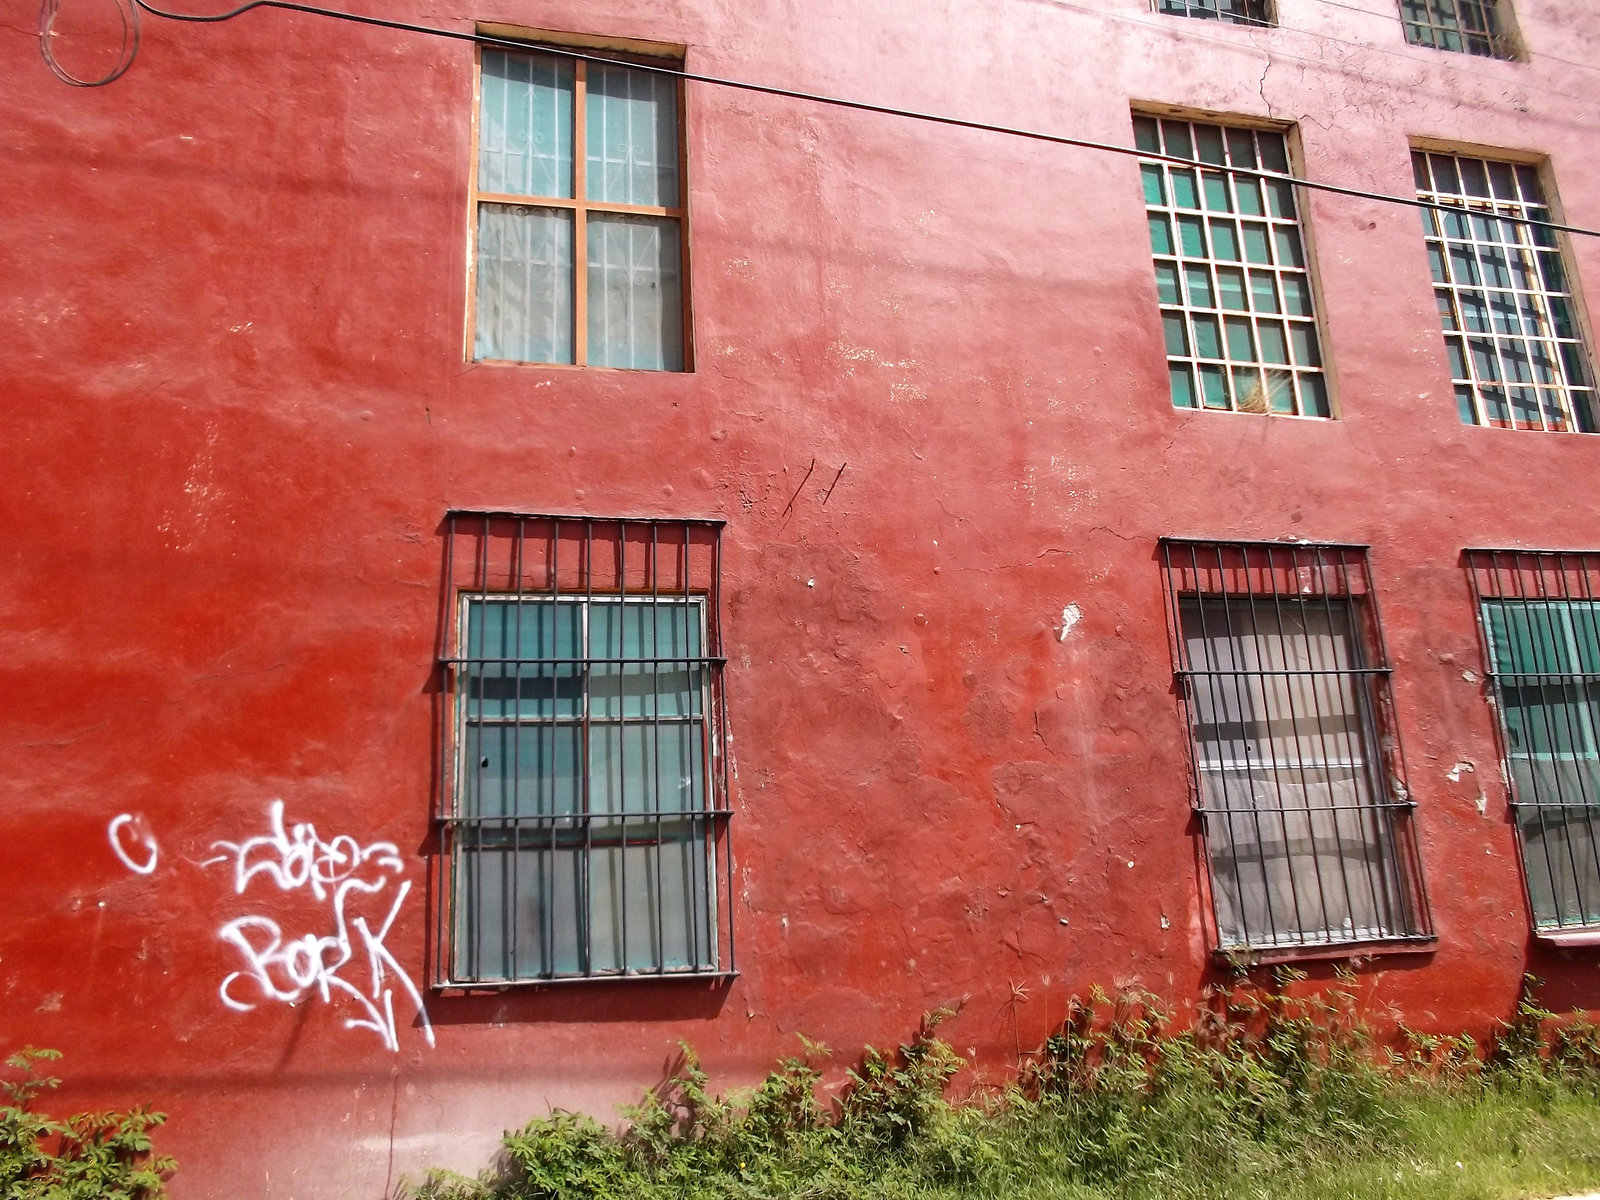 Fenêtres et graffiti immaculé